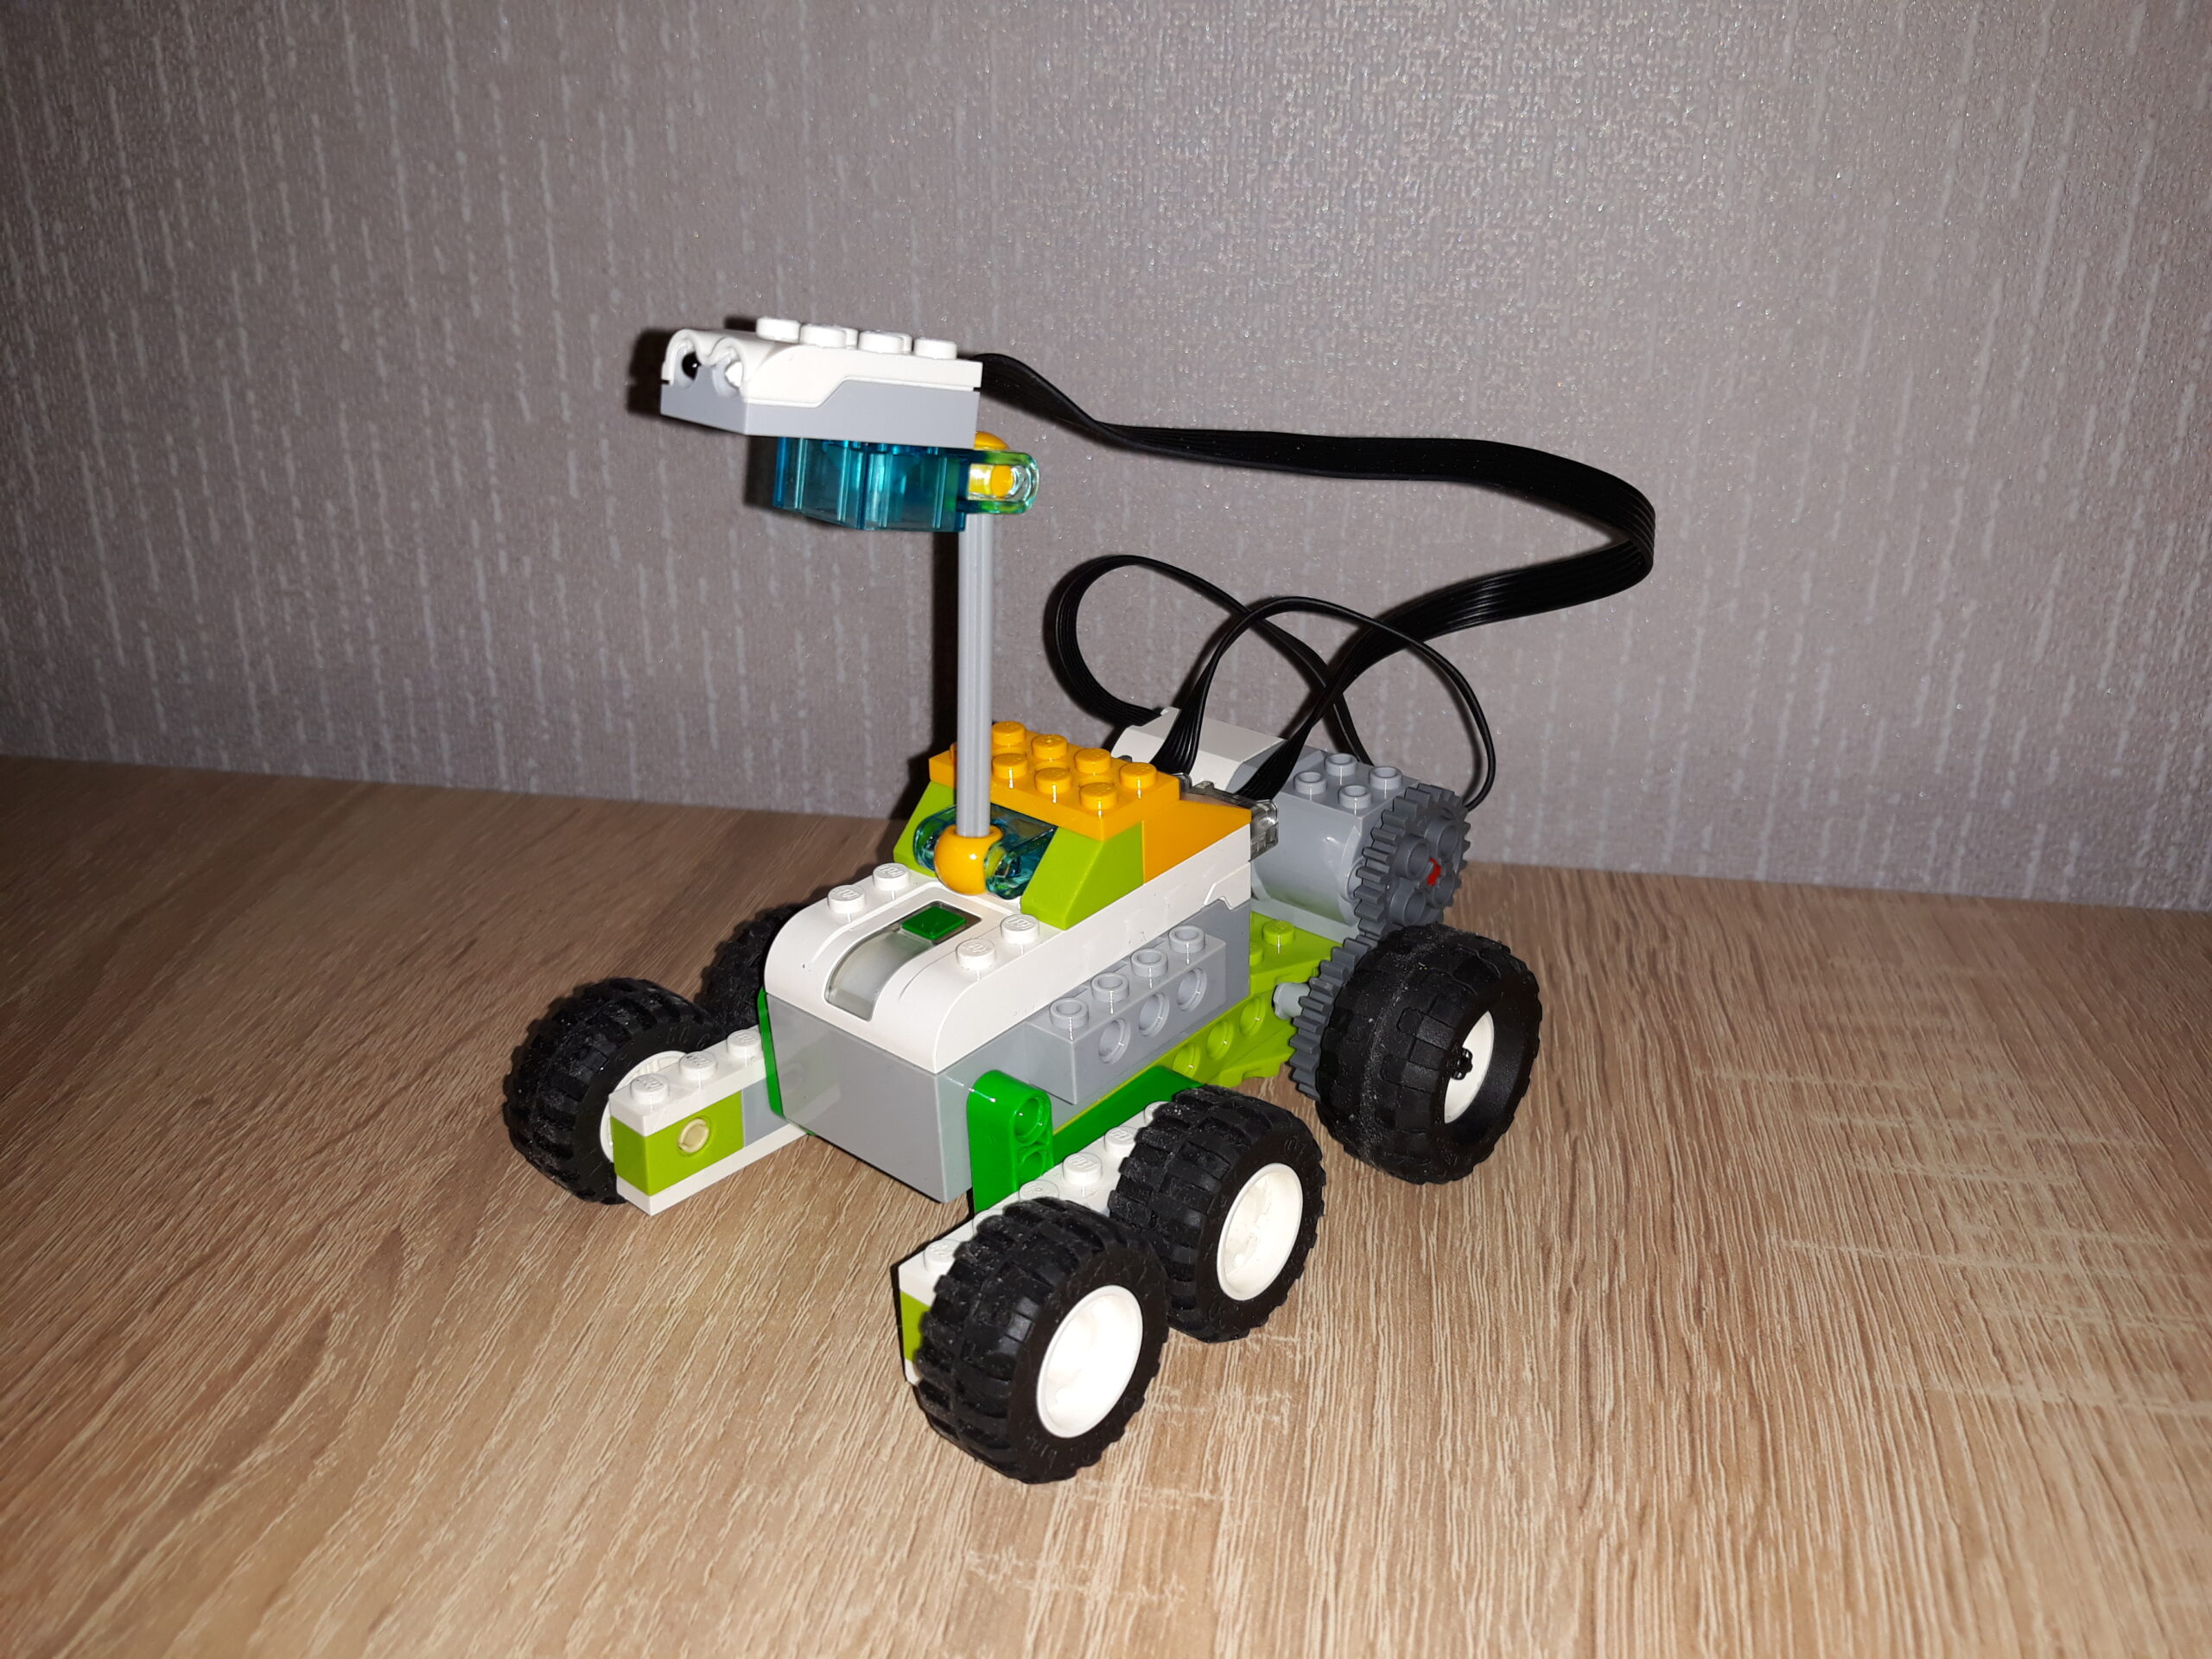 Скачать инструкцию по сборке из набора LEGO Education WeDo 2.0 Марсоход